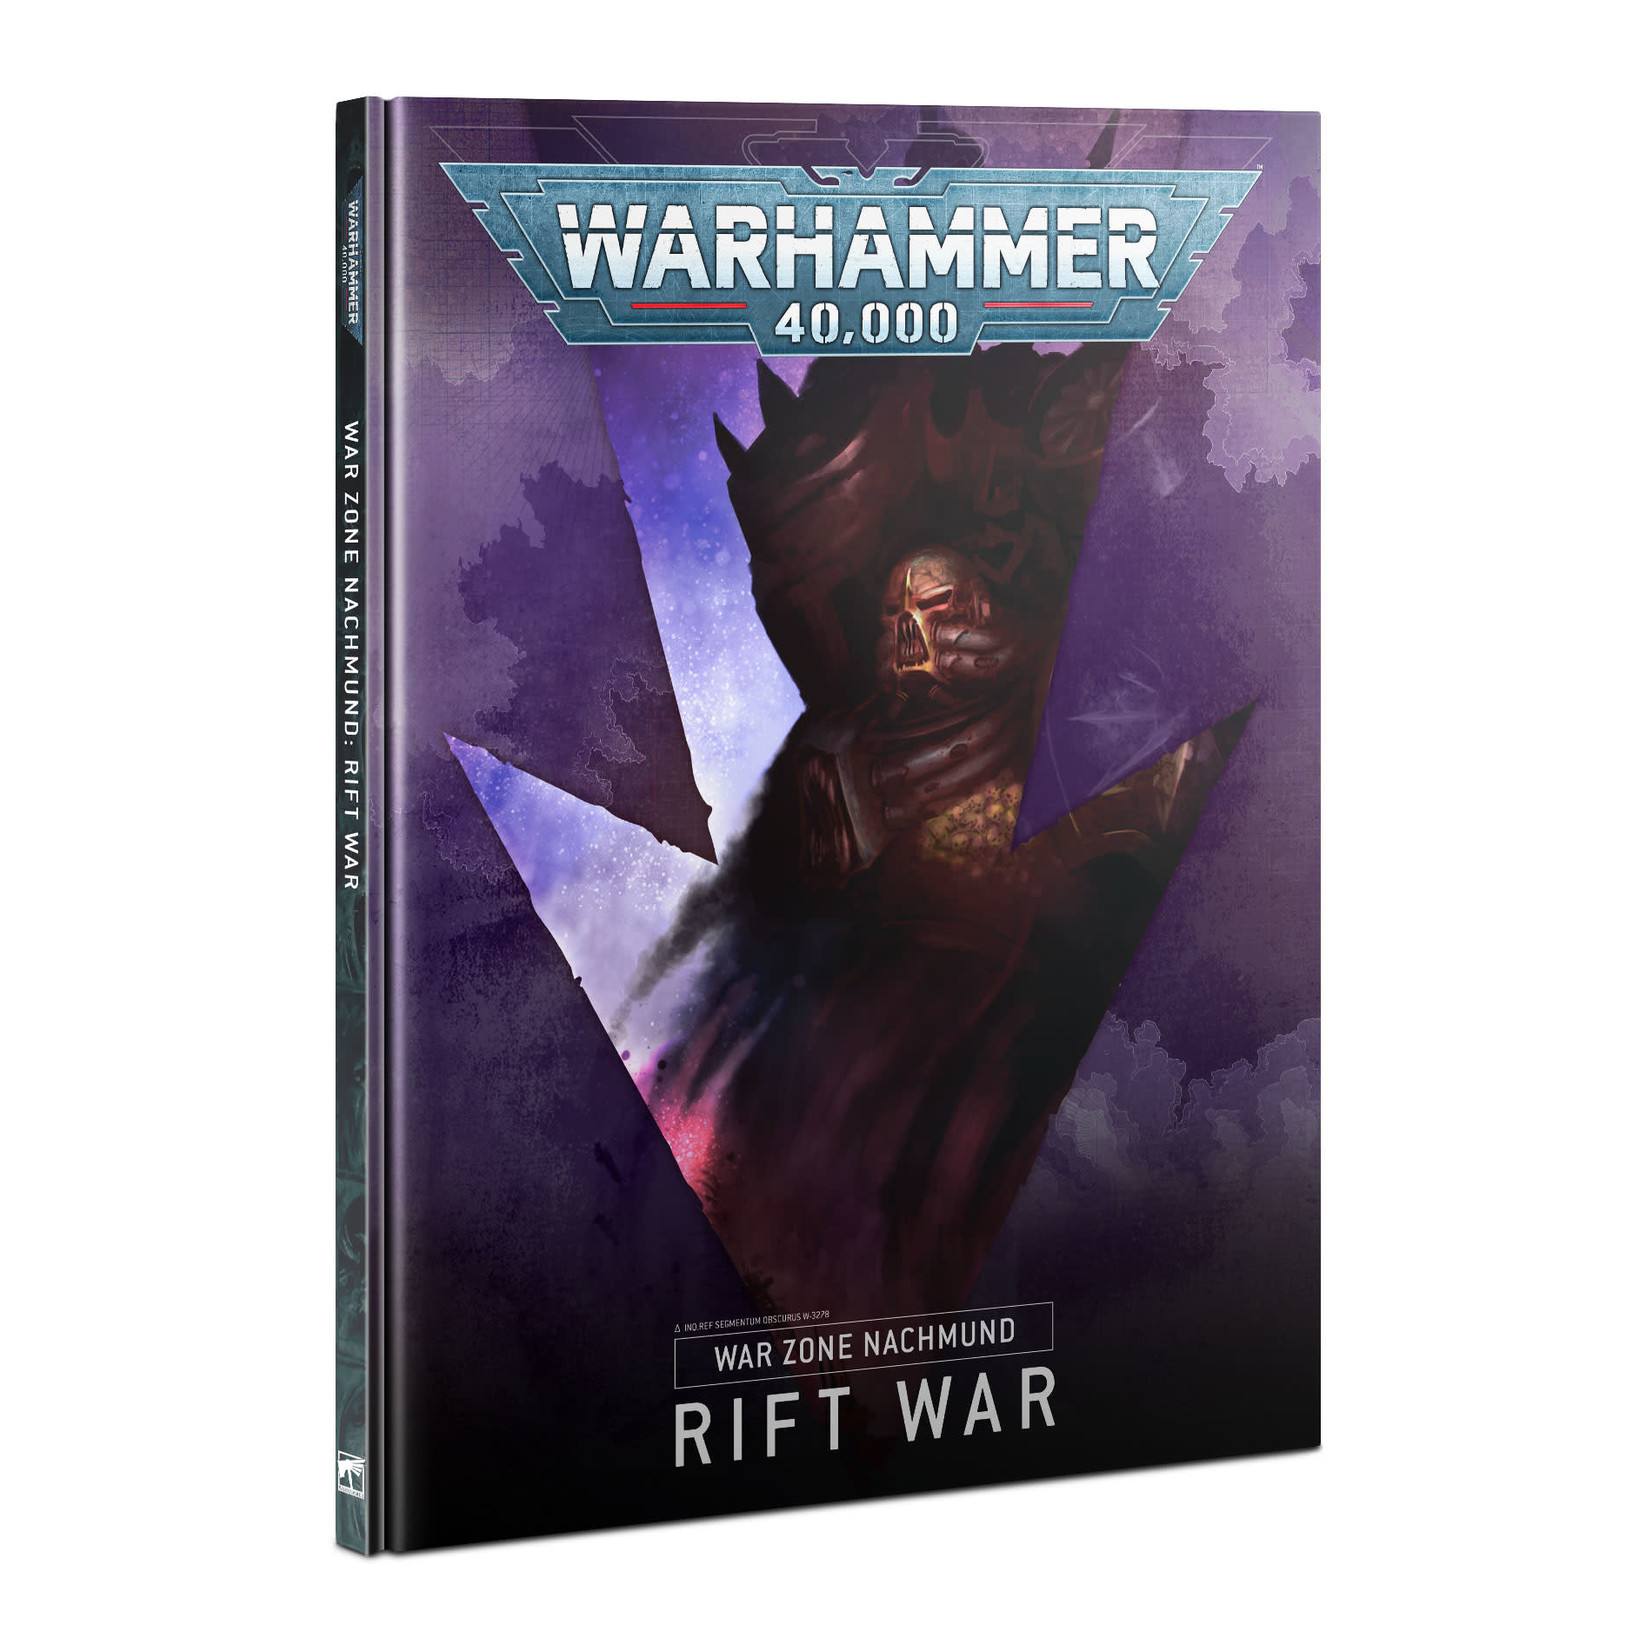 Warhammer 40k Warhammer 40k: Warzone Nachmund: Rift War